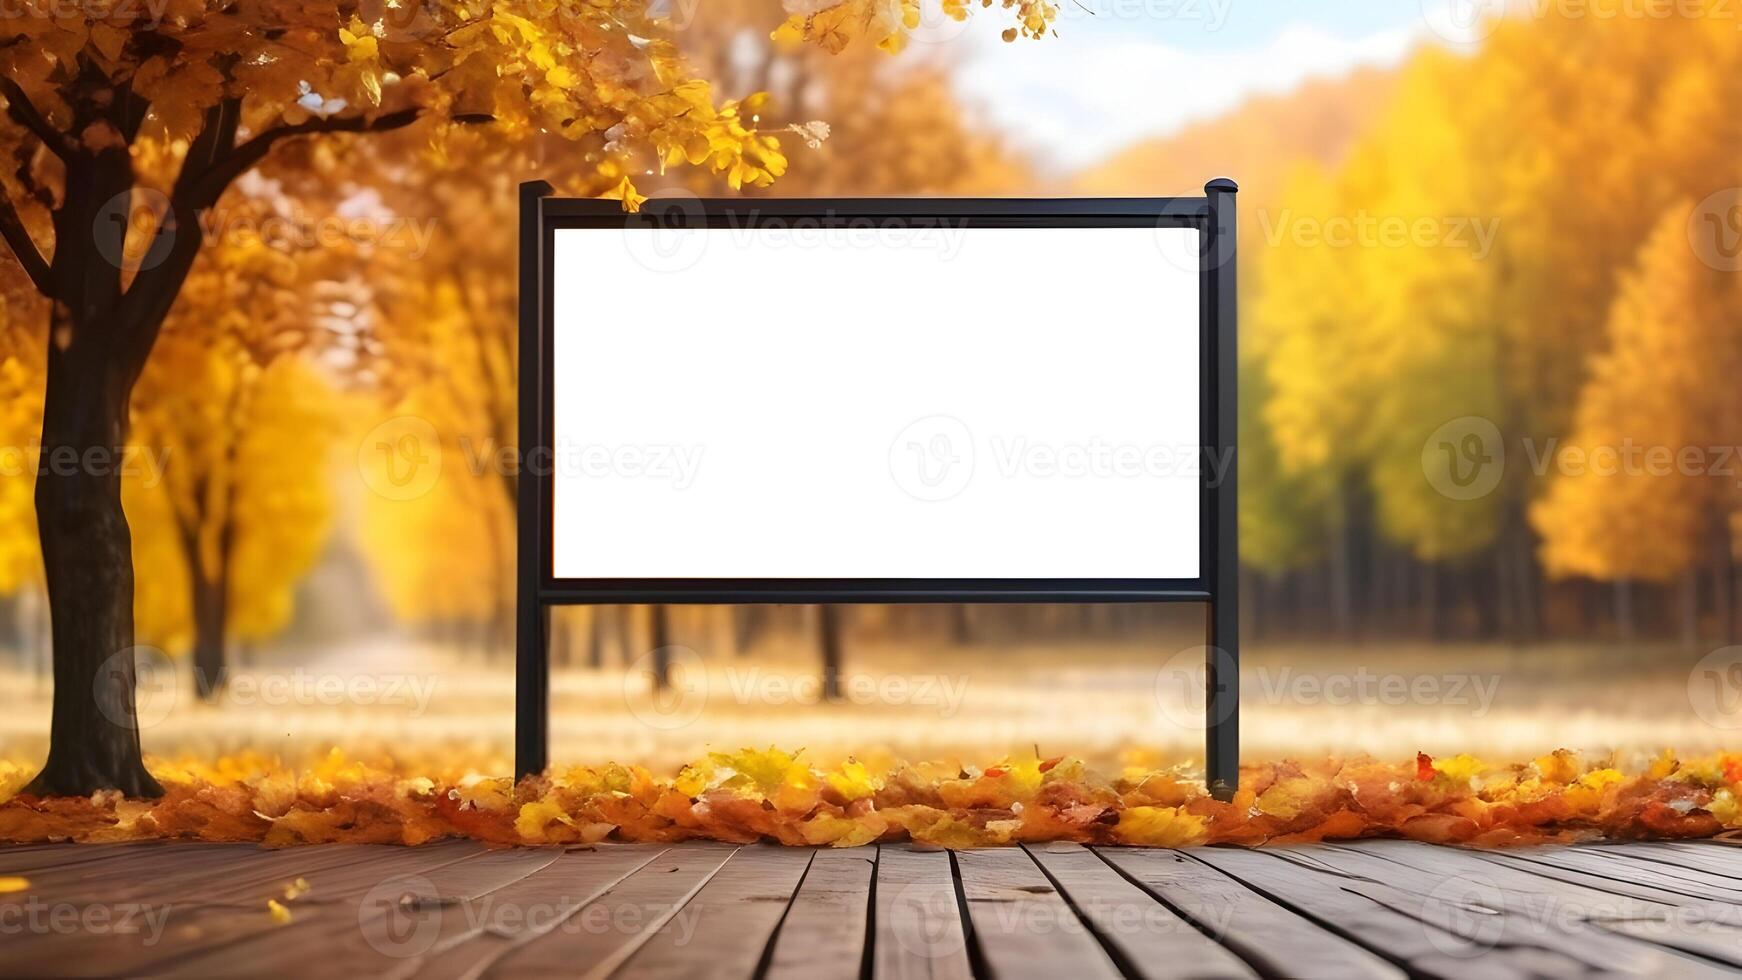 Vide horizontal panneau d'affichage pour La publicité sur flou l'automne jardin Contexte photo